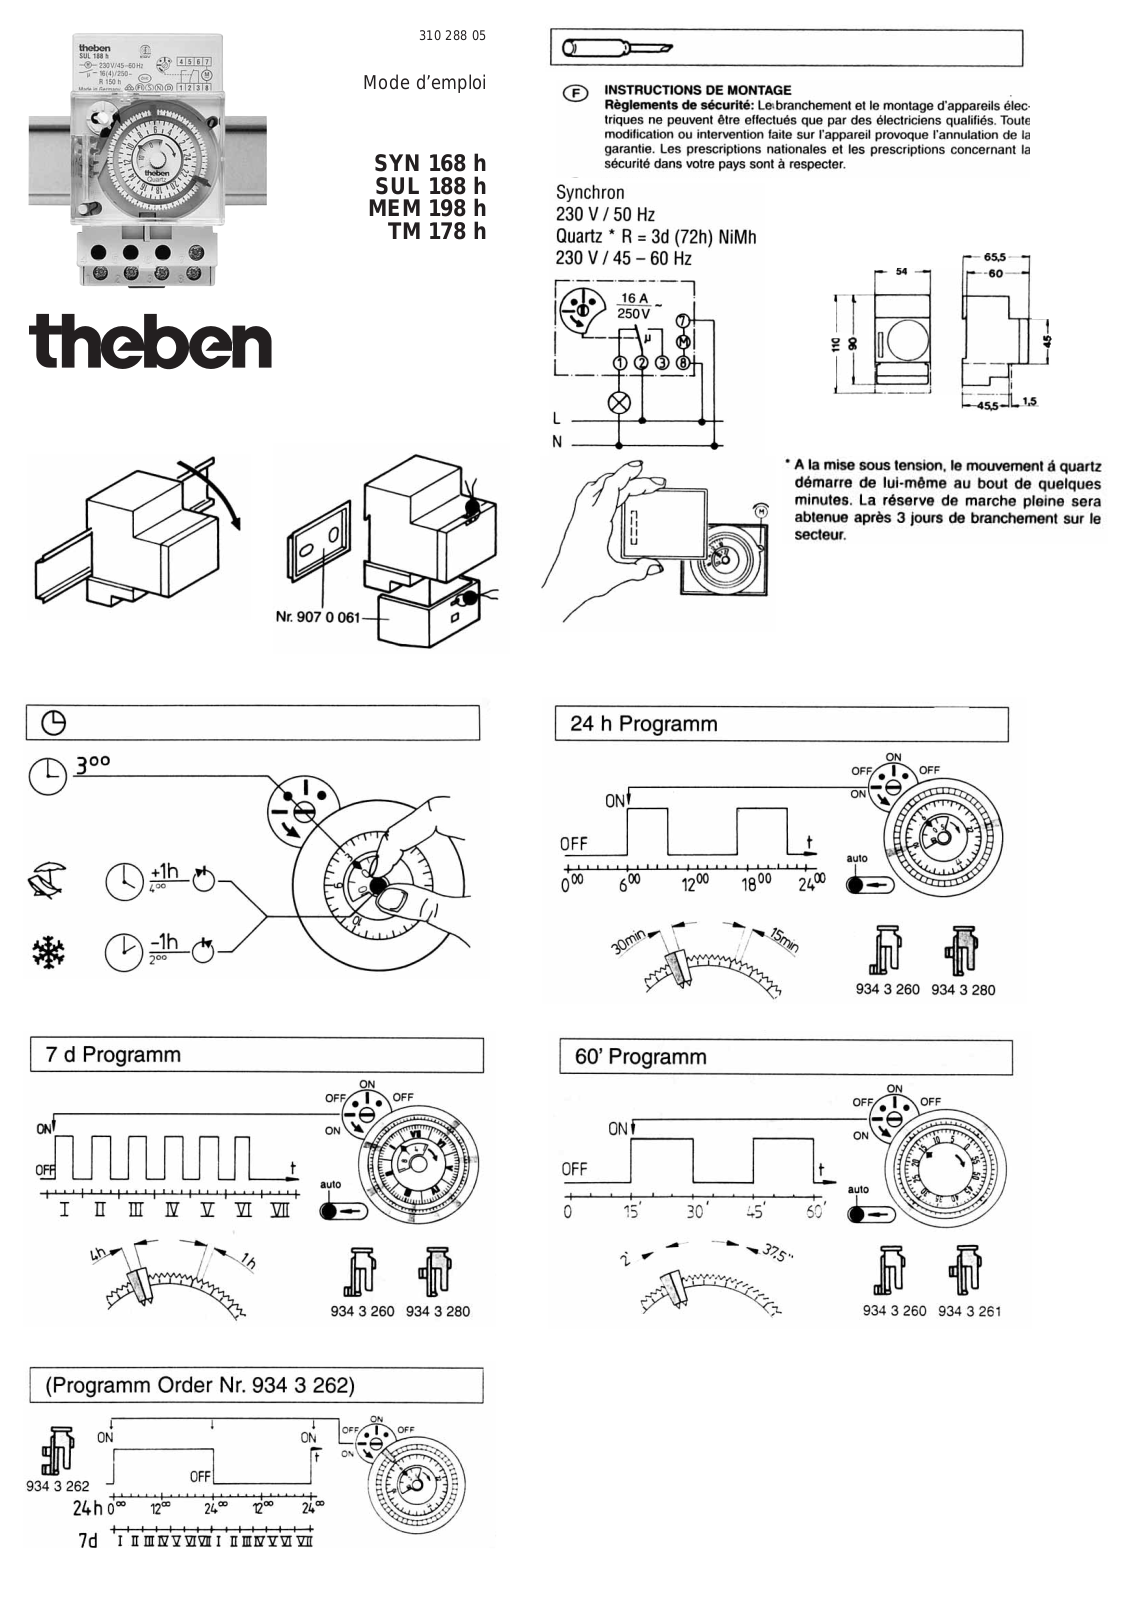 Theben TM 178 H, SUL 188 H, SYN 168 H, MEM 198 H User manual